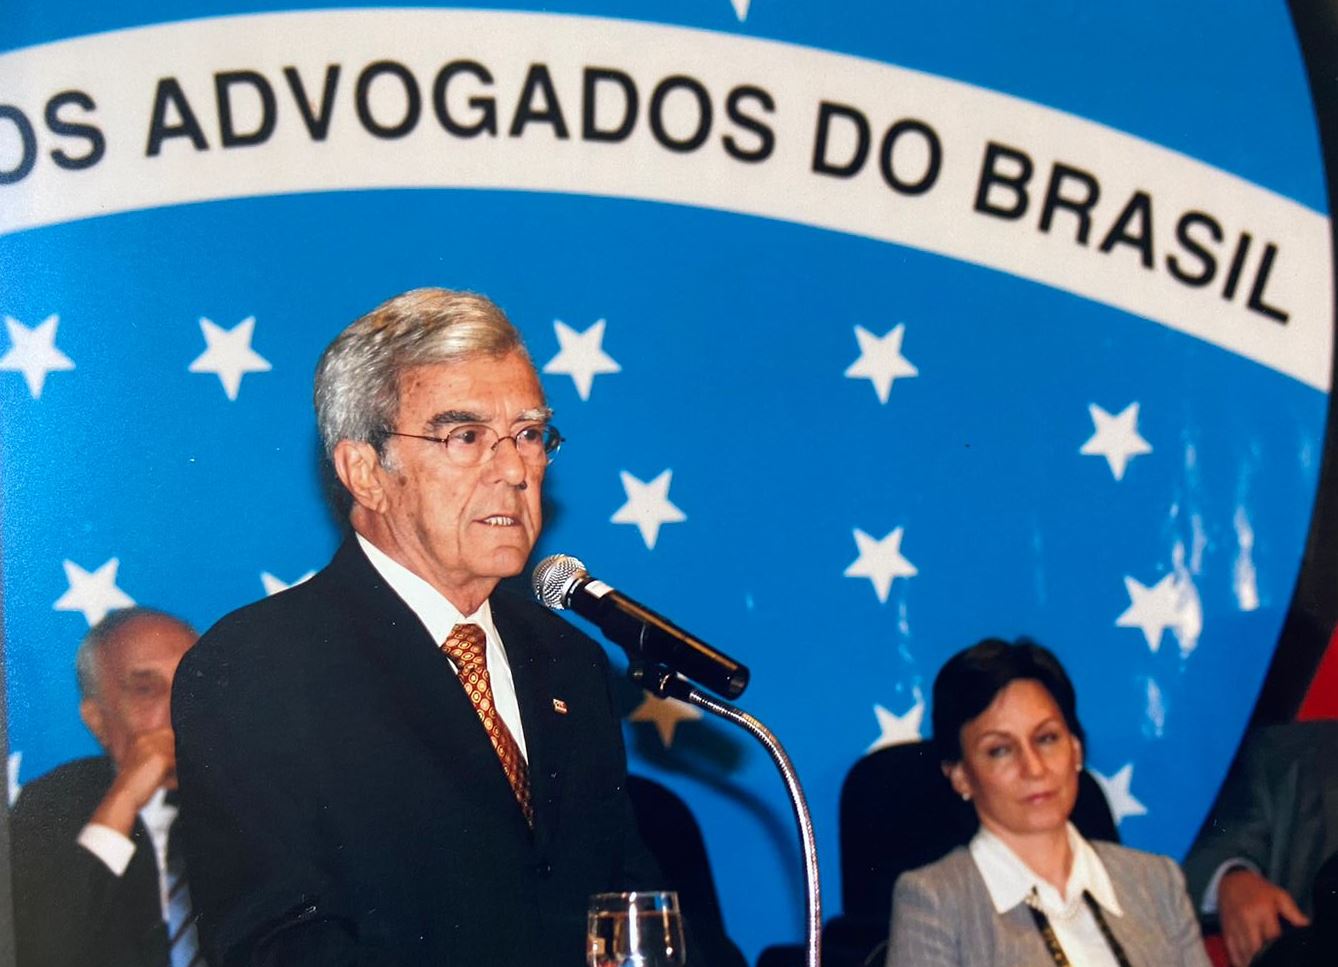 O professor Octávio Lôbo será homenageado na Faculdade de Direito do Recife. Foto arquivo pessoal.